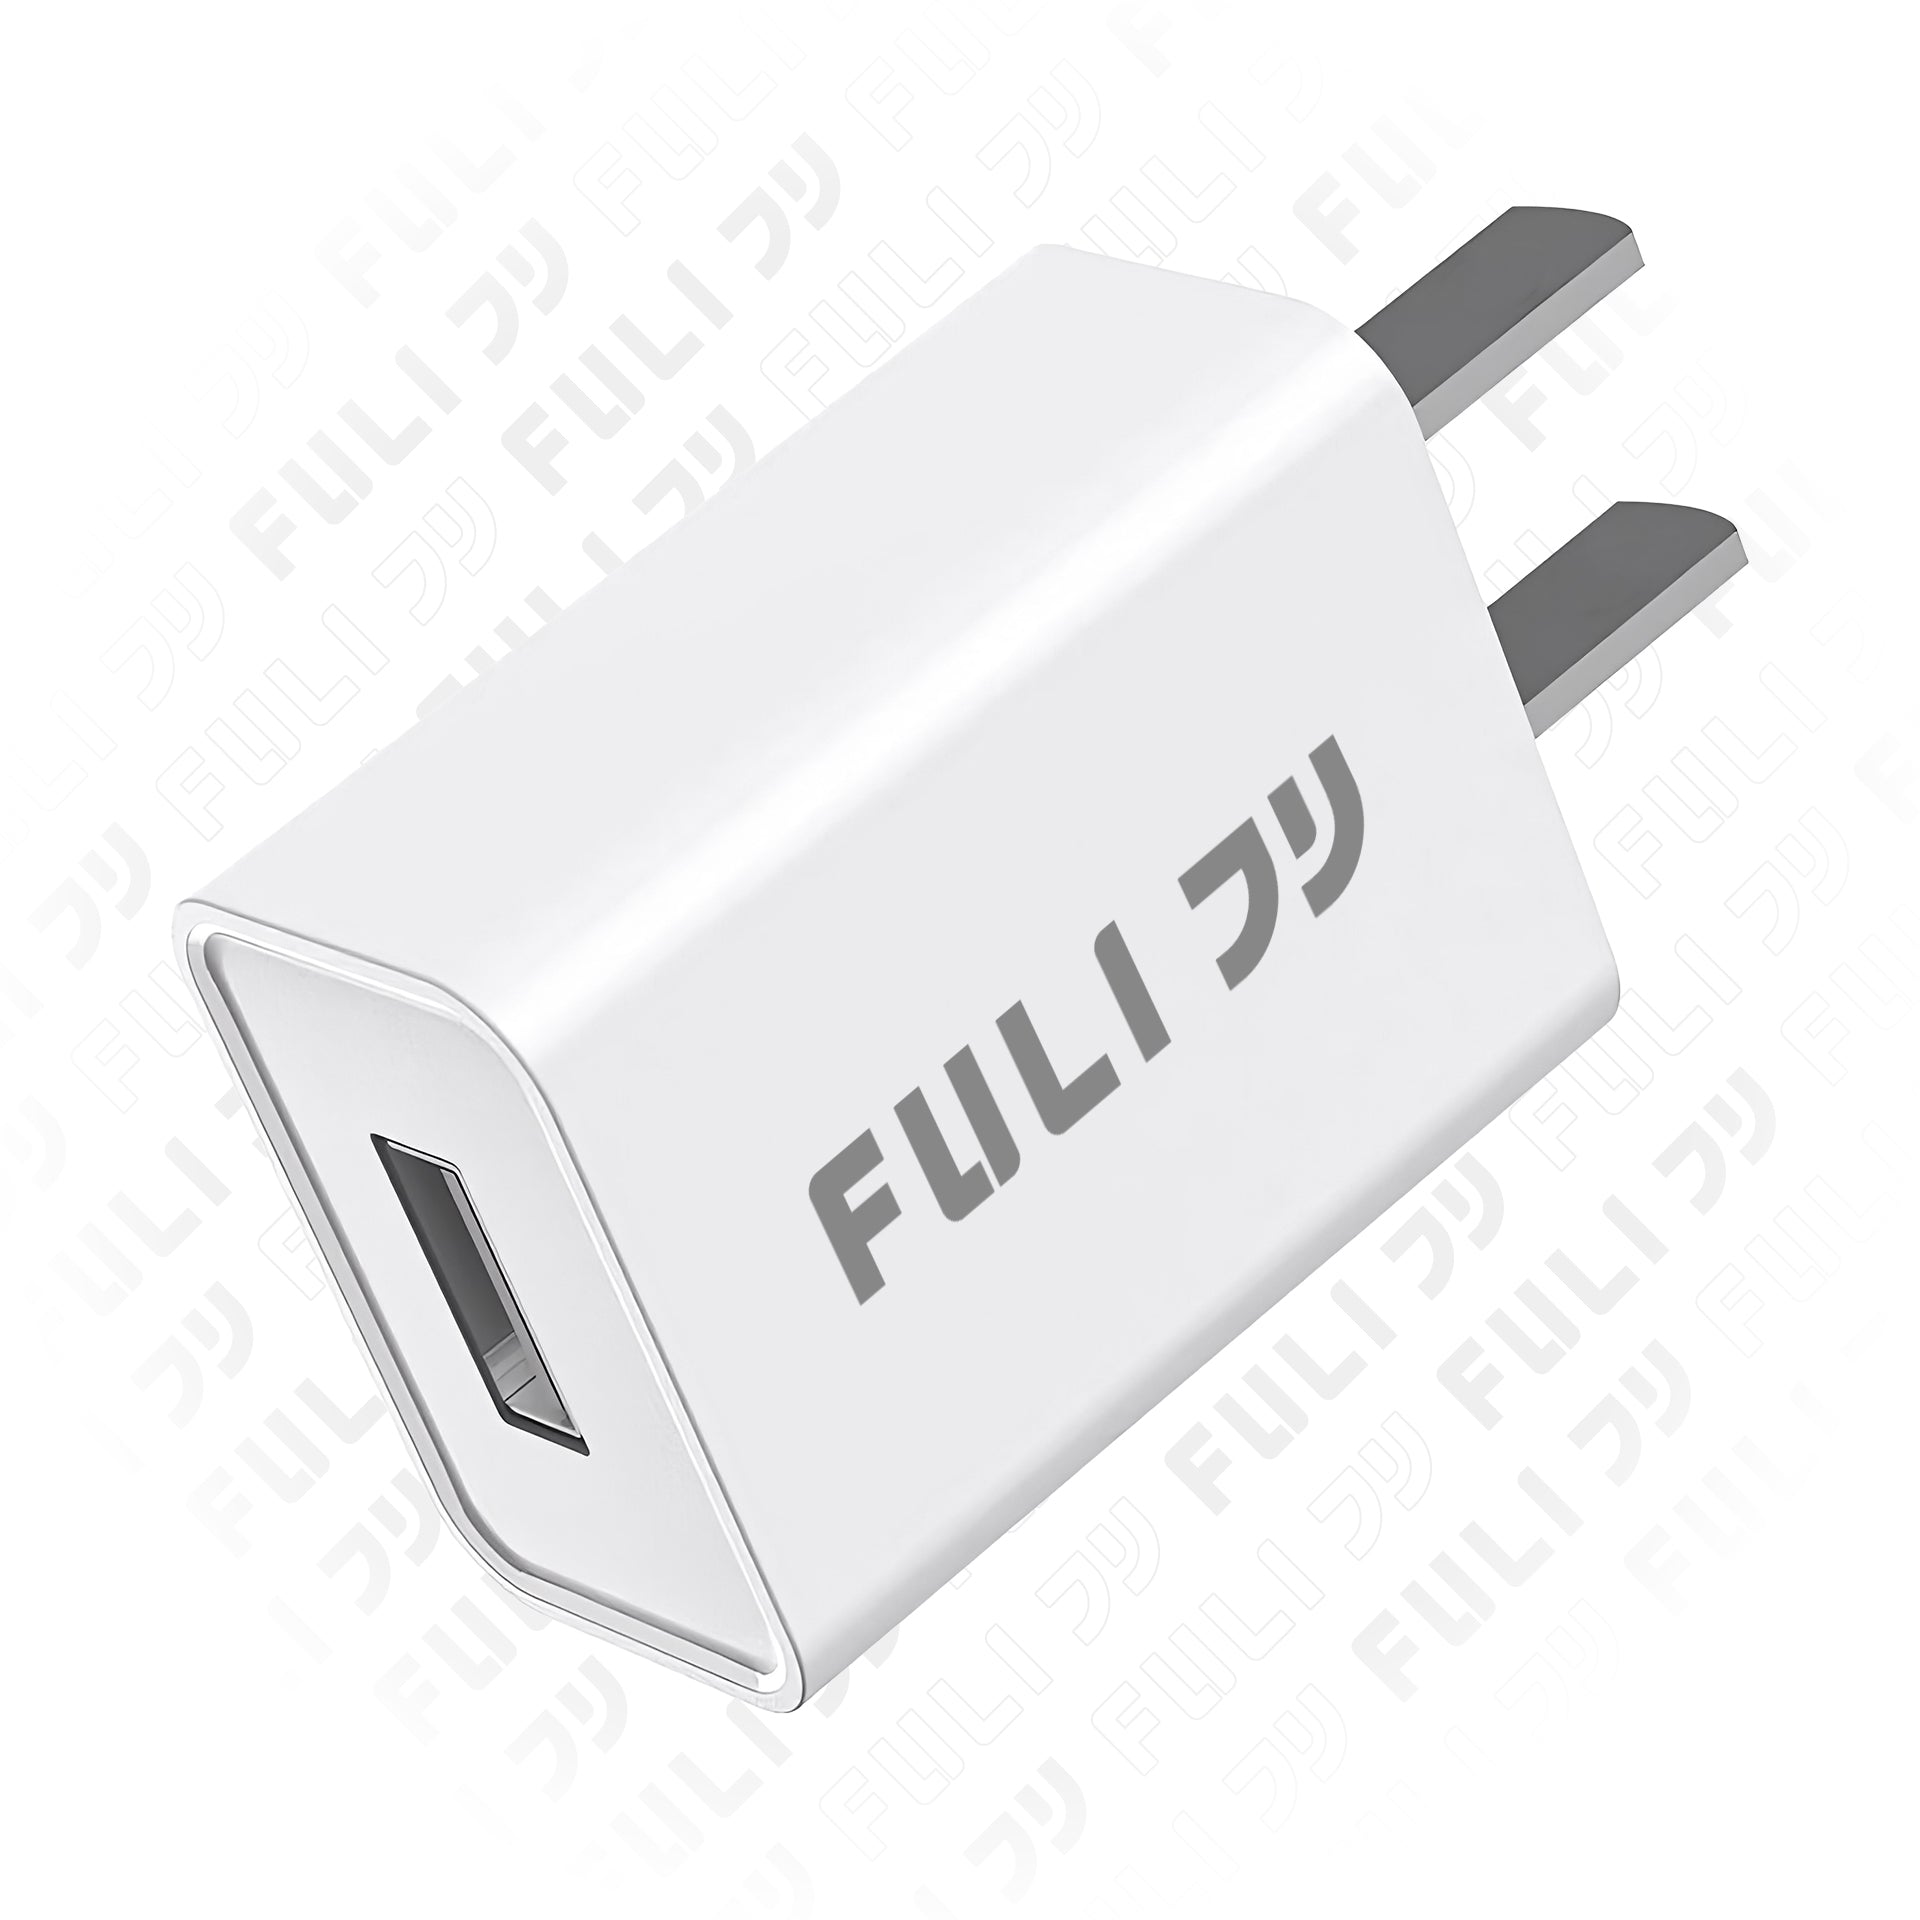 หัวชาร์จ USB Type-A (5V/1A) | FULI USB Type-A Charger (5V/1A)